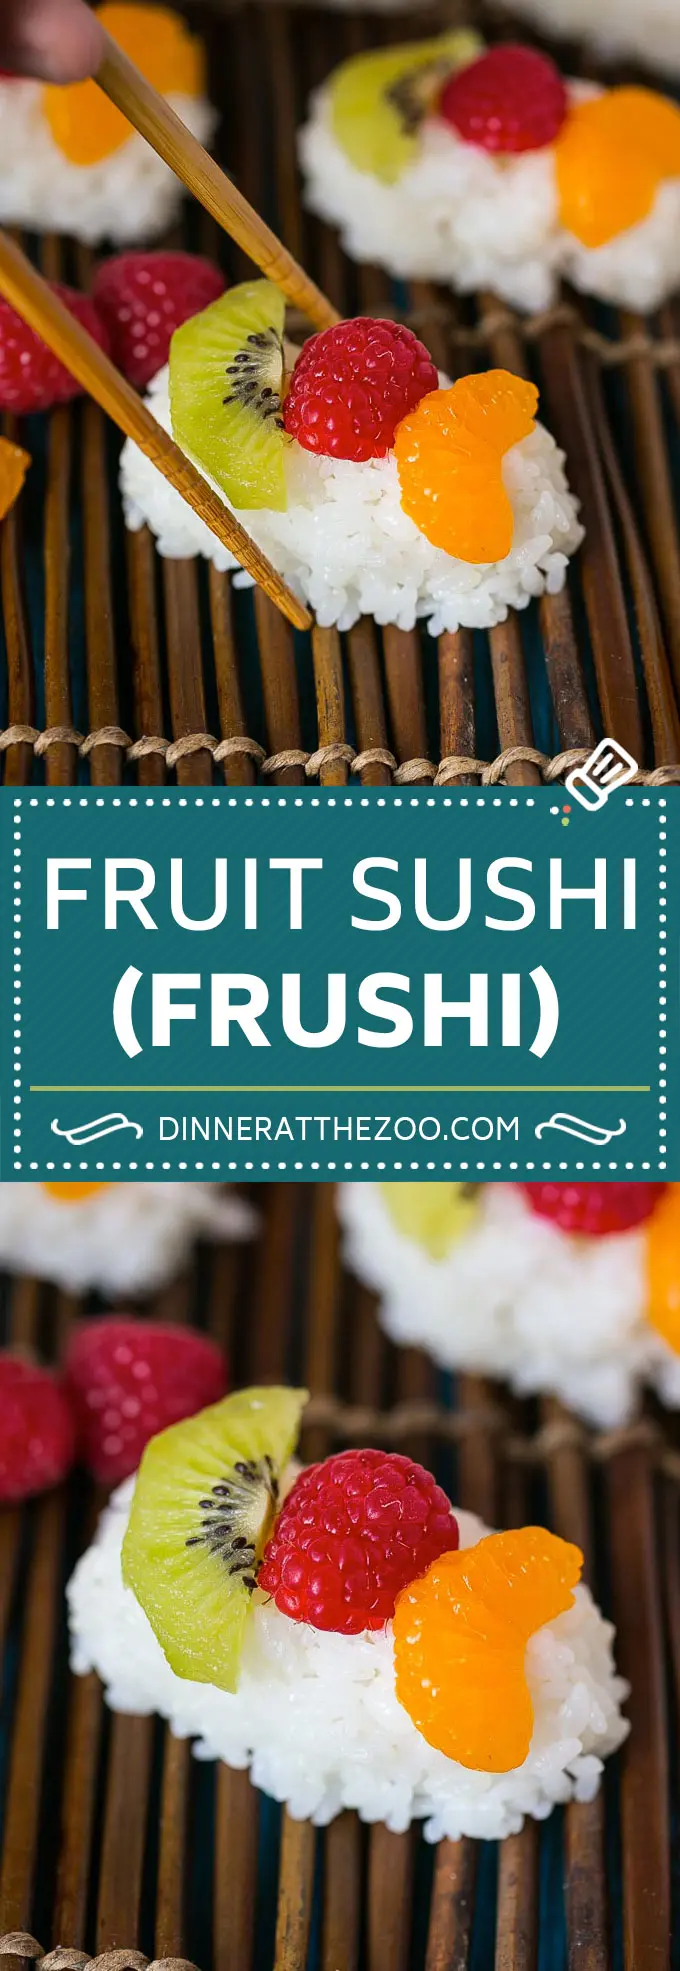 Recept na ovocné sushi | dezertní sushi #ovocné #sushi #snack #dessert #dinneratthezoo